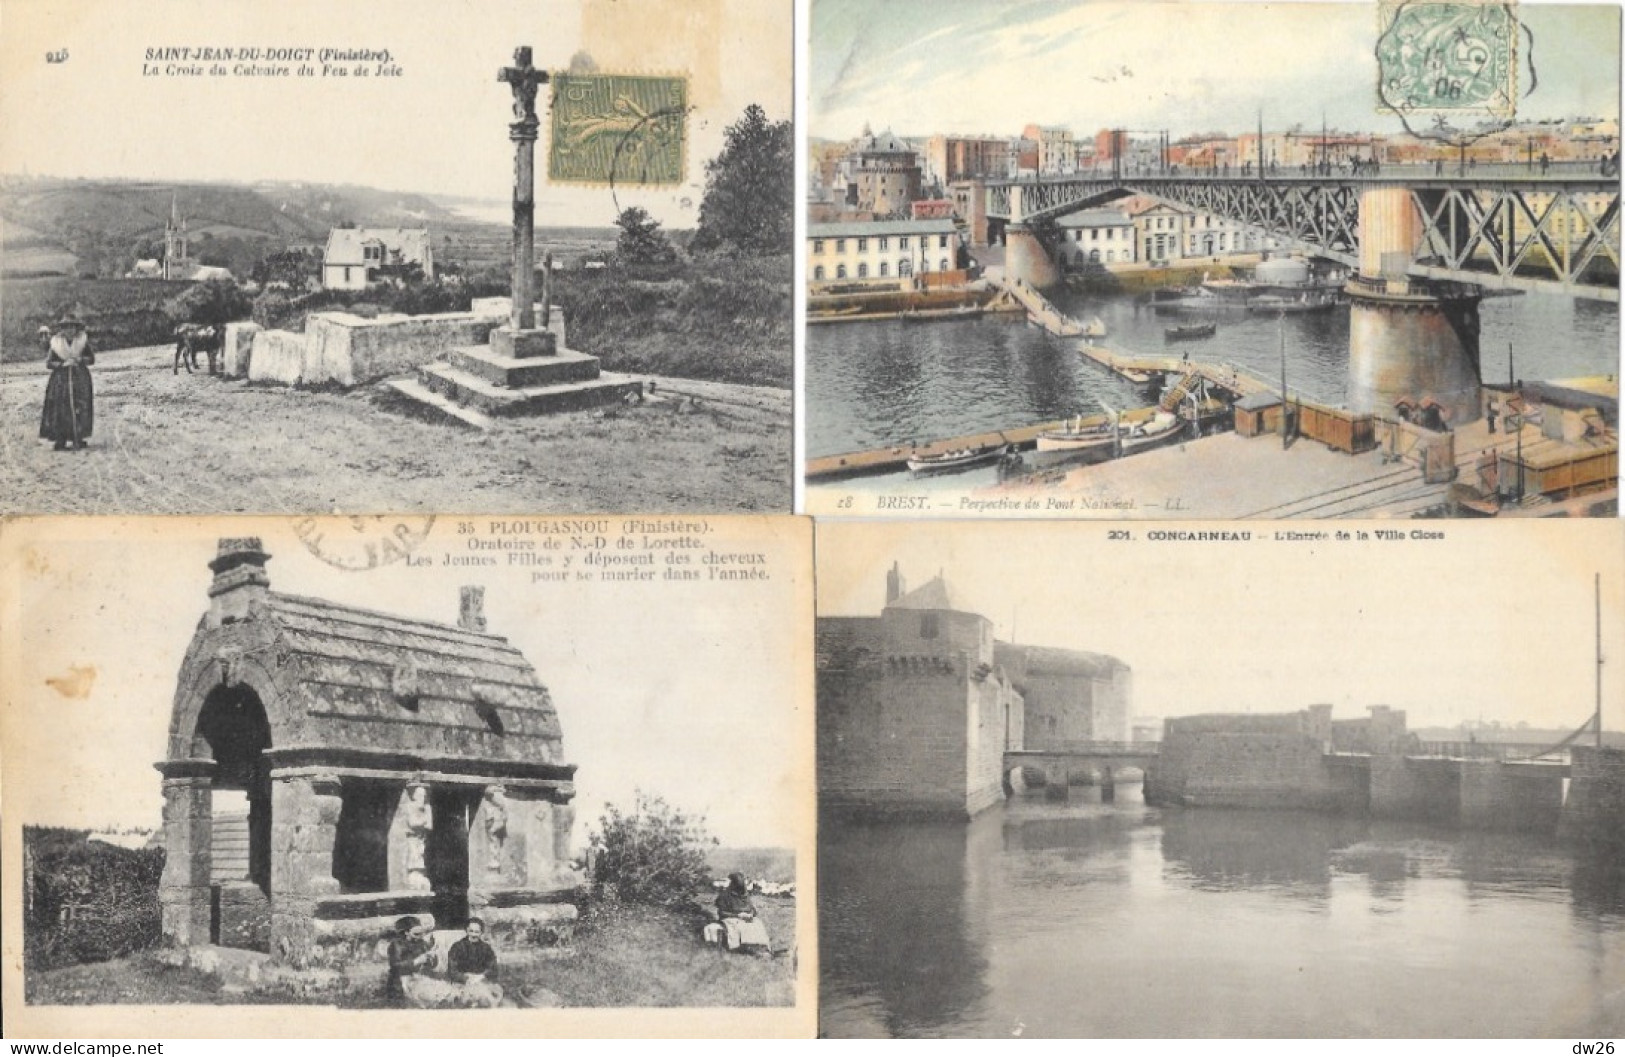 Lot n° 185 de 60 cartes de Bretagne (Côtes-du-Nord, Finistère) villes, villages, Ports, petites animations